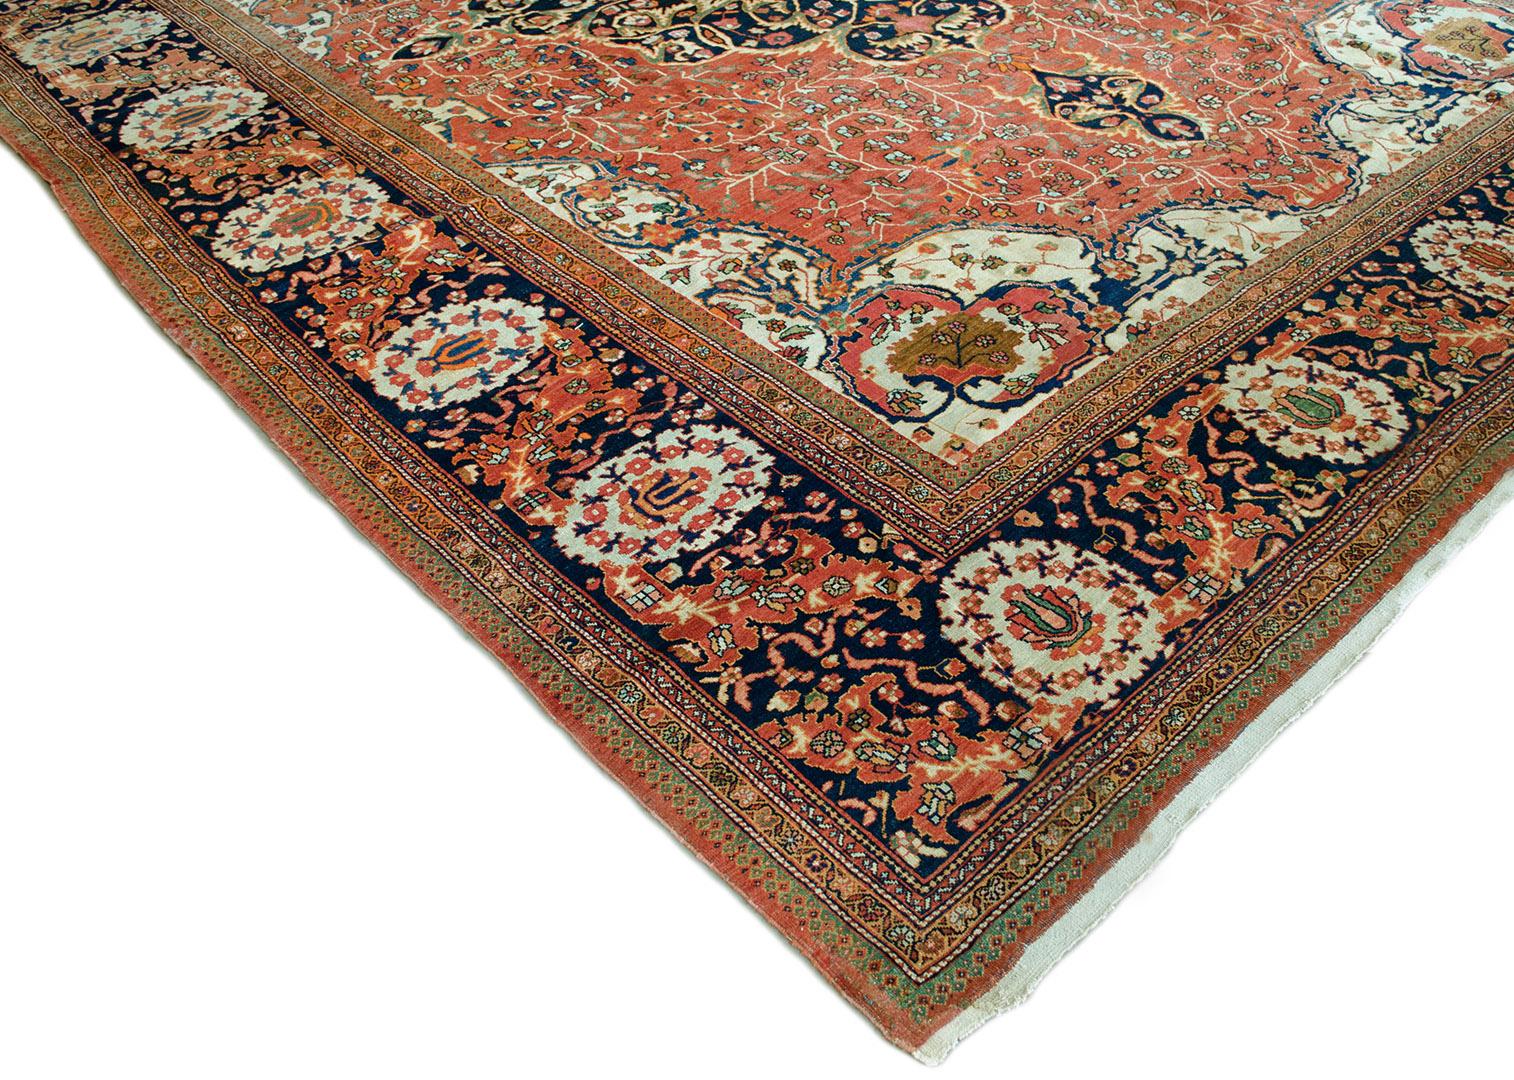 Ce tapis persan traditionnel Fereghan tissé à la main présente un champ rouge brique extrêmement fin de motifs floraux polychromes épars entourant un médaillon en losange à double agrafe d'un indigo profond et d'ivoire, contenant une profusion